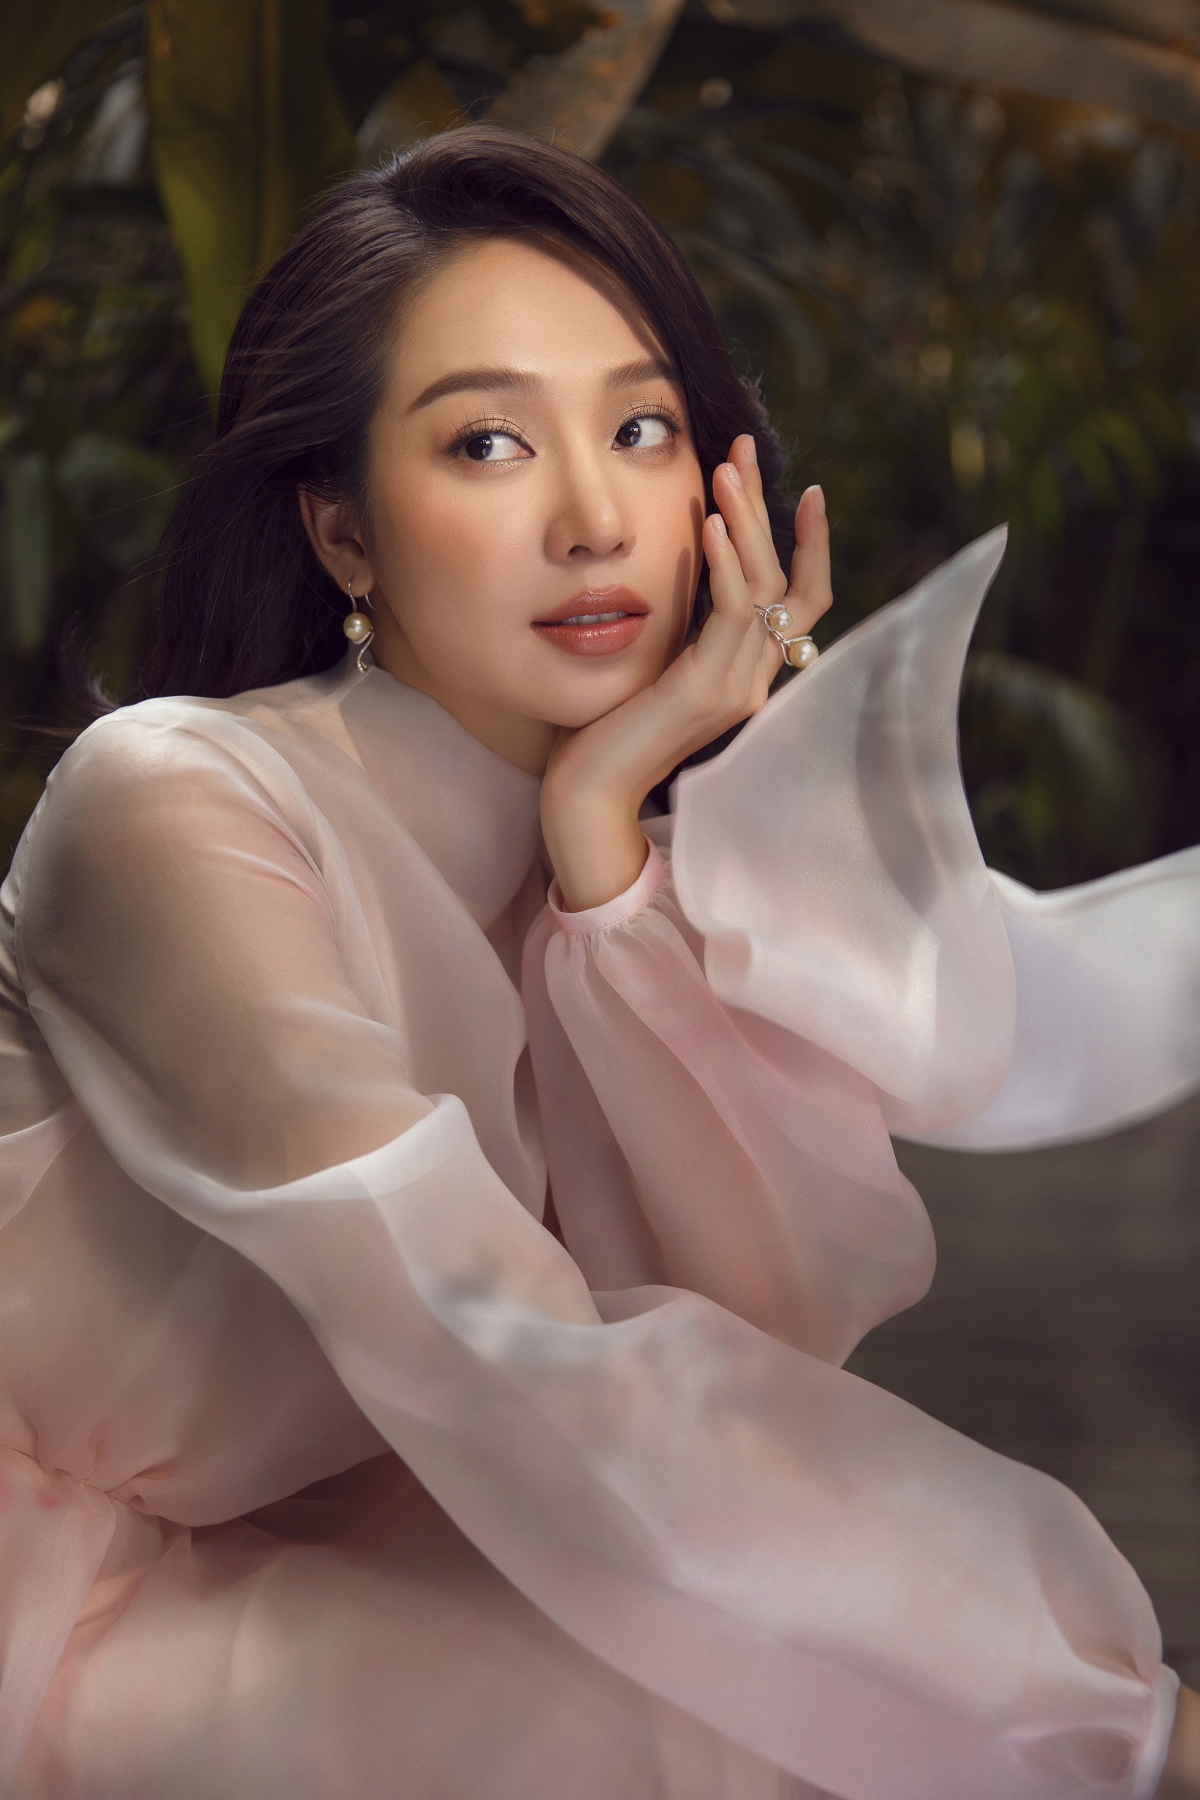 Hoa hậu Thanh Thủy đẹp gợi cảm trong bộ ảnh mới - Ảnh 3.